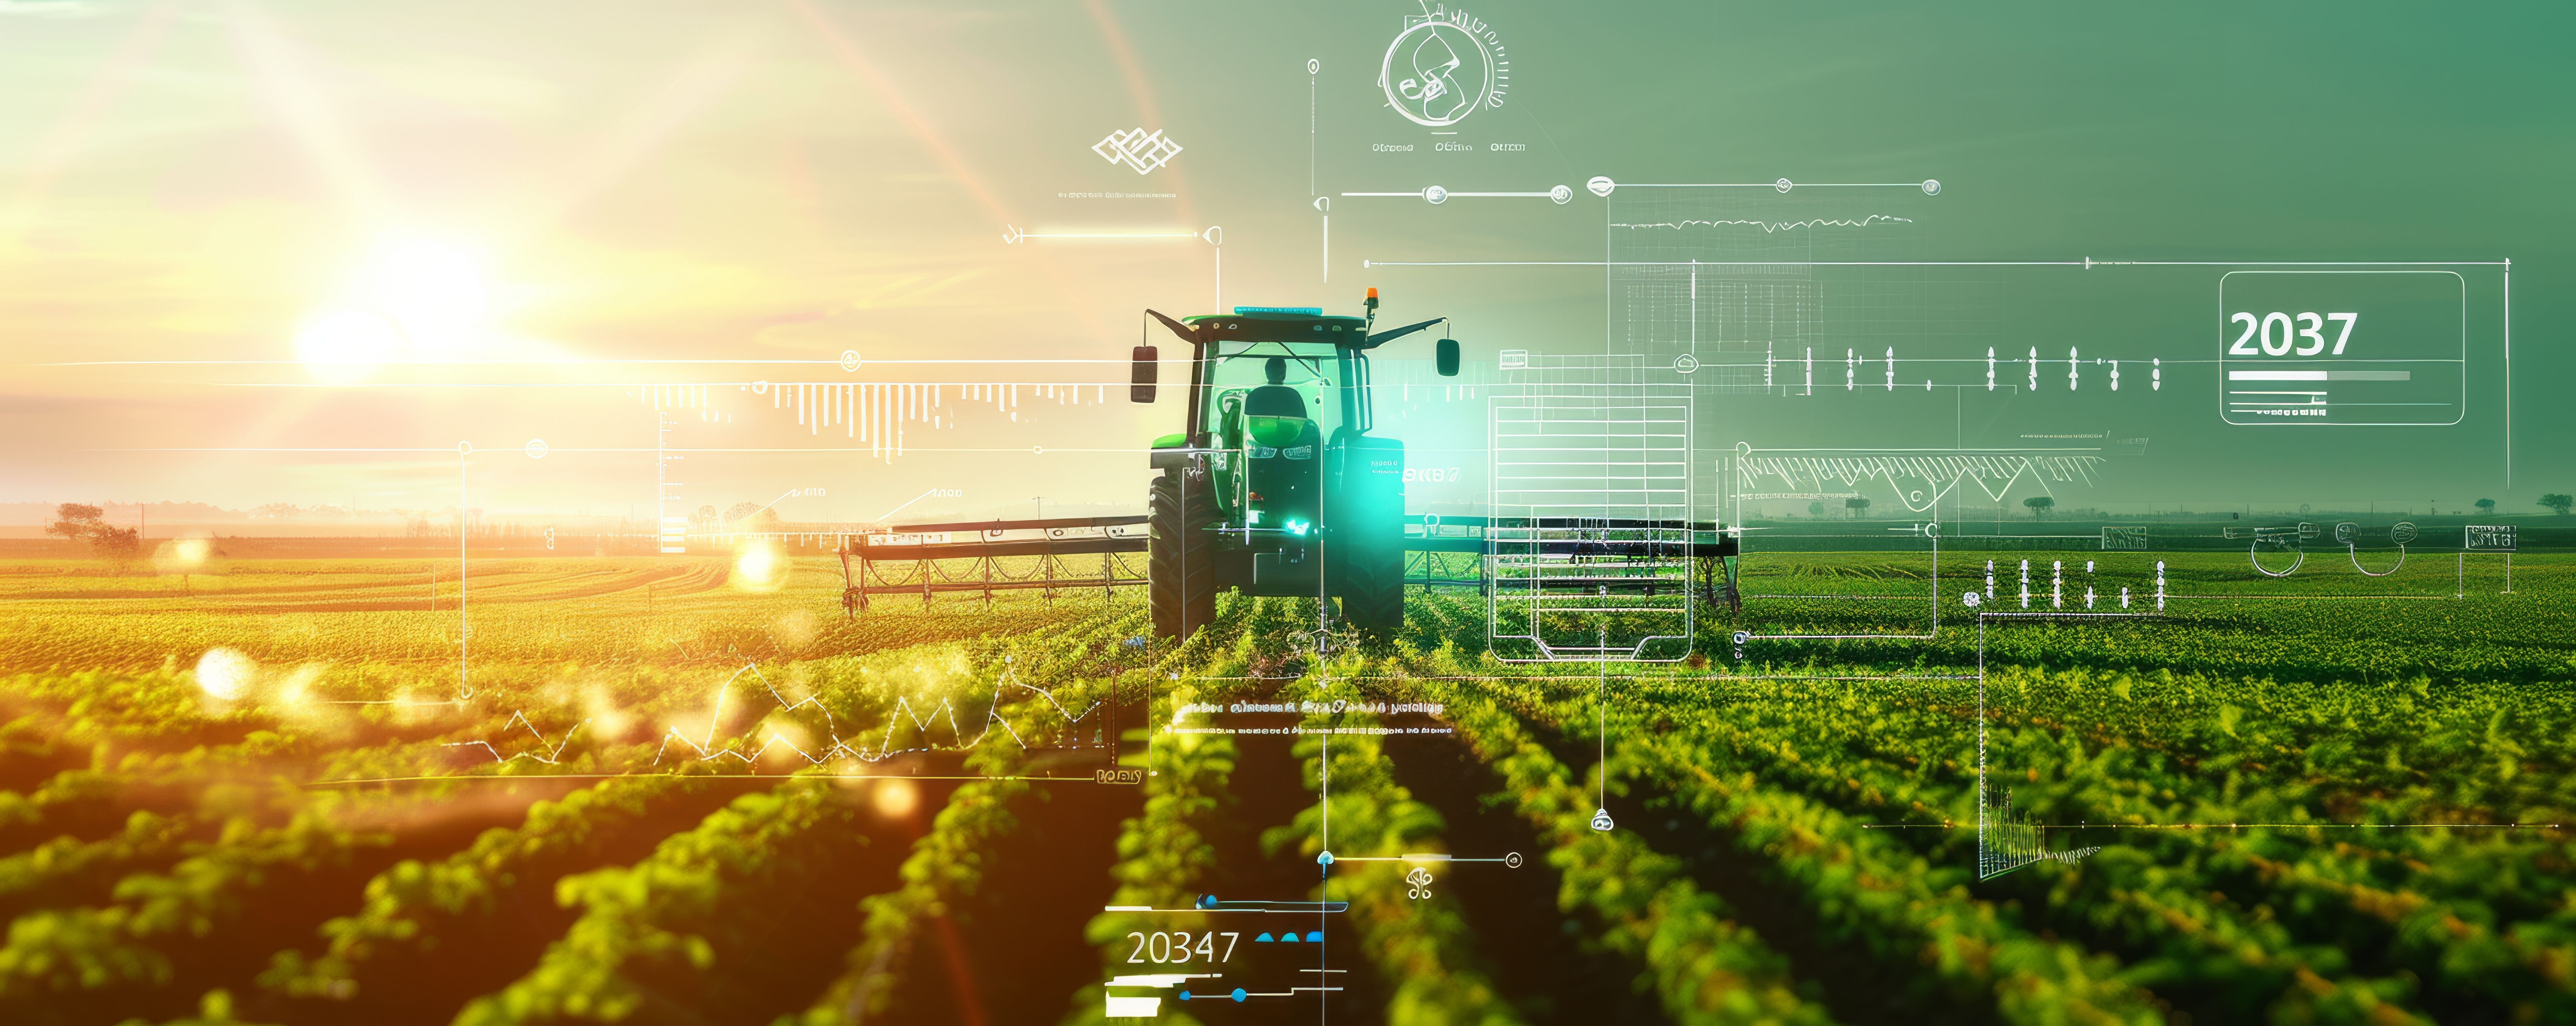 Digitalt jordbruk och 4.0: Var står vi egentligen? 1